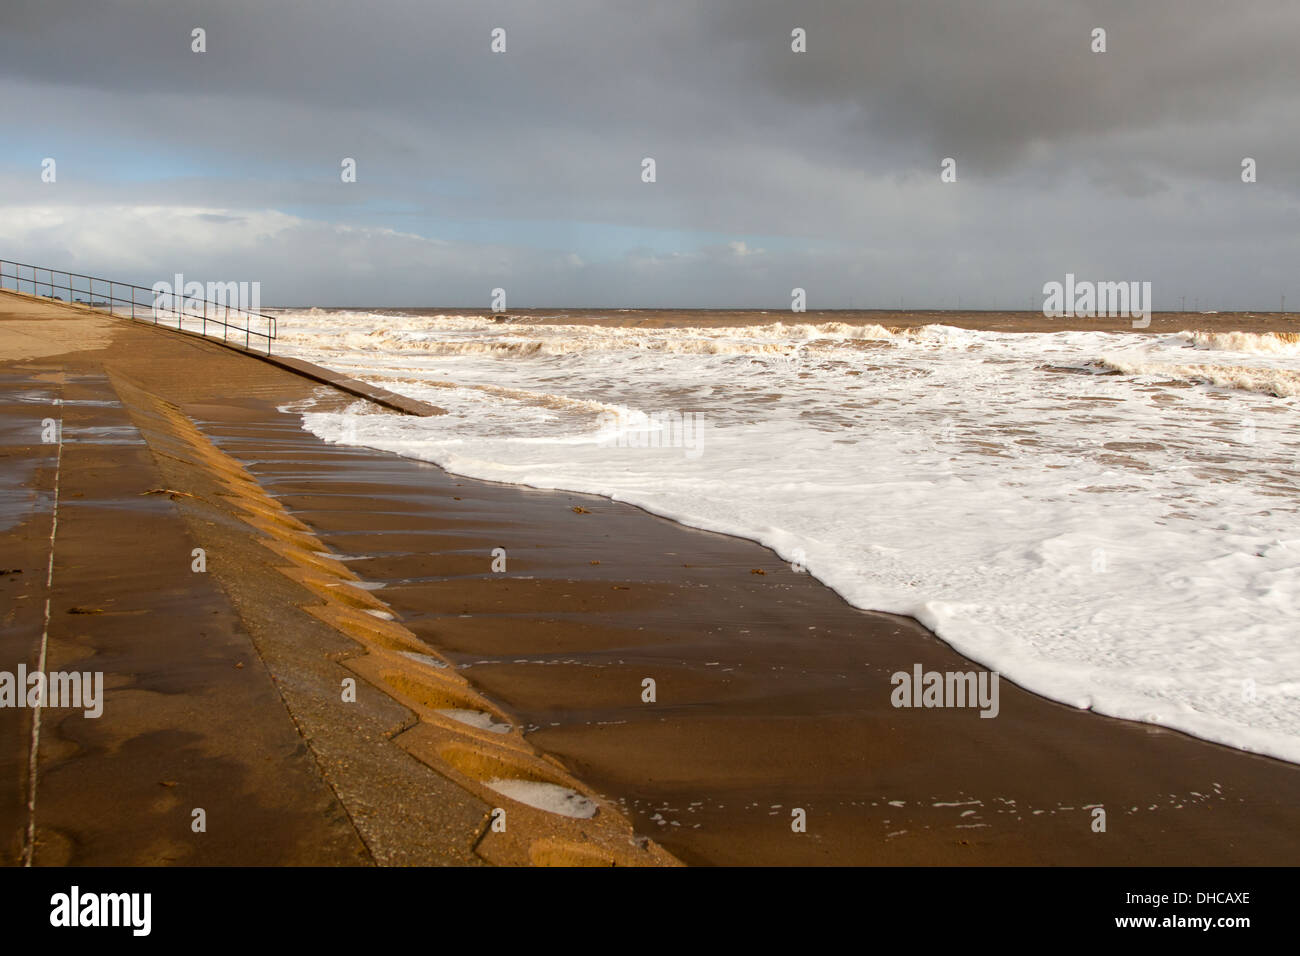 Mare tempestoso skegness north shore beach Foto Stock